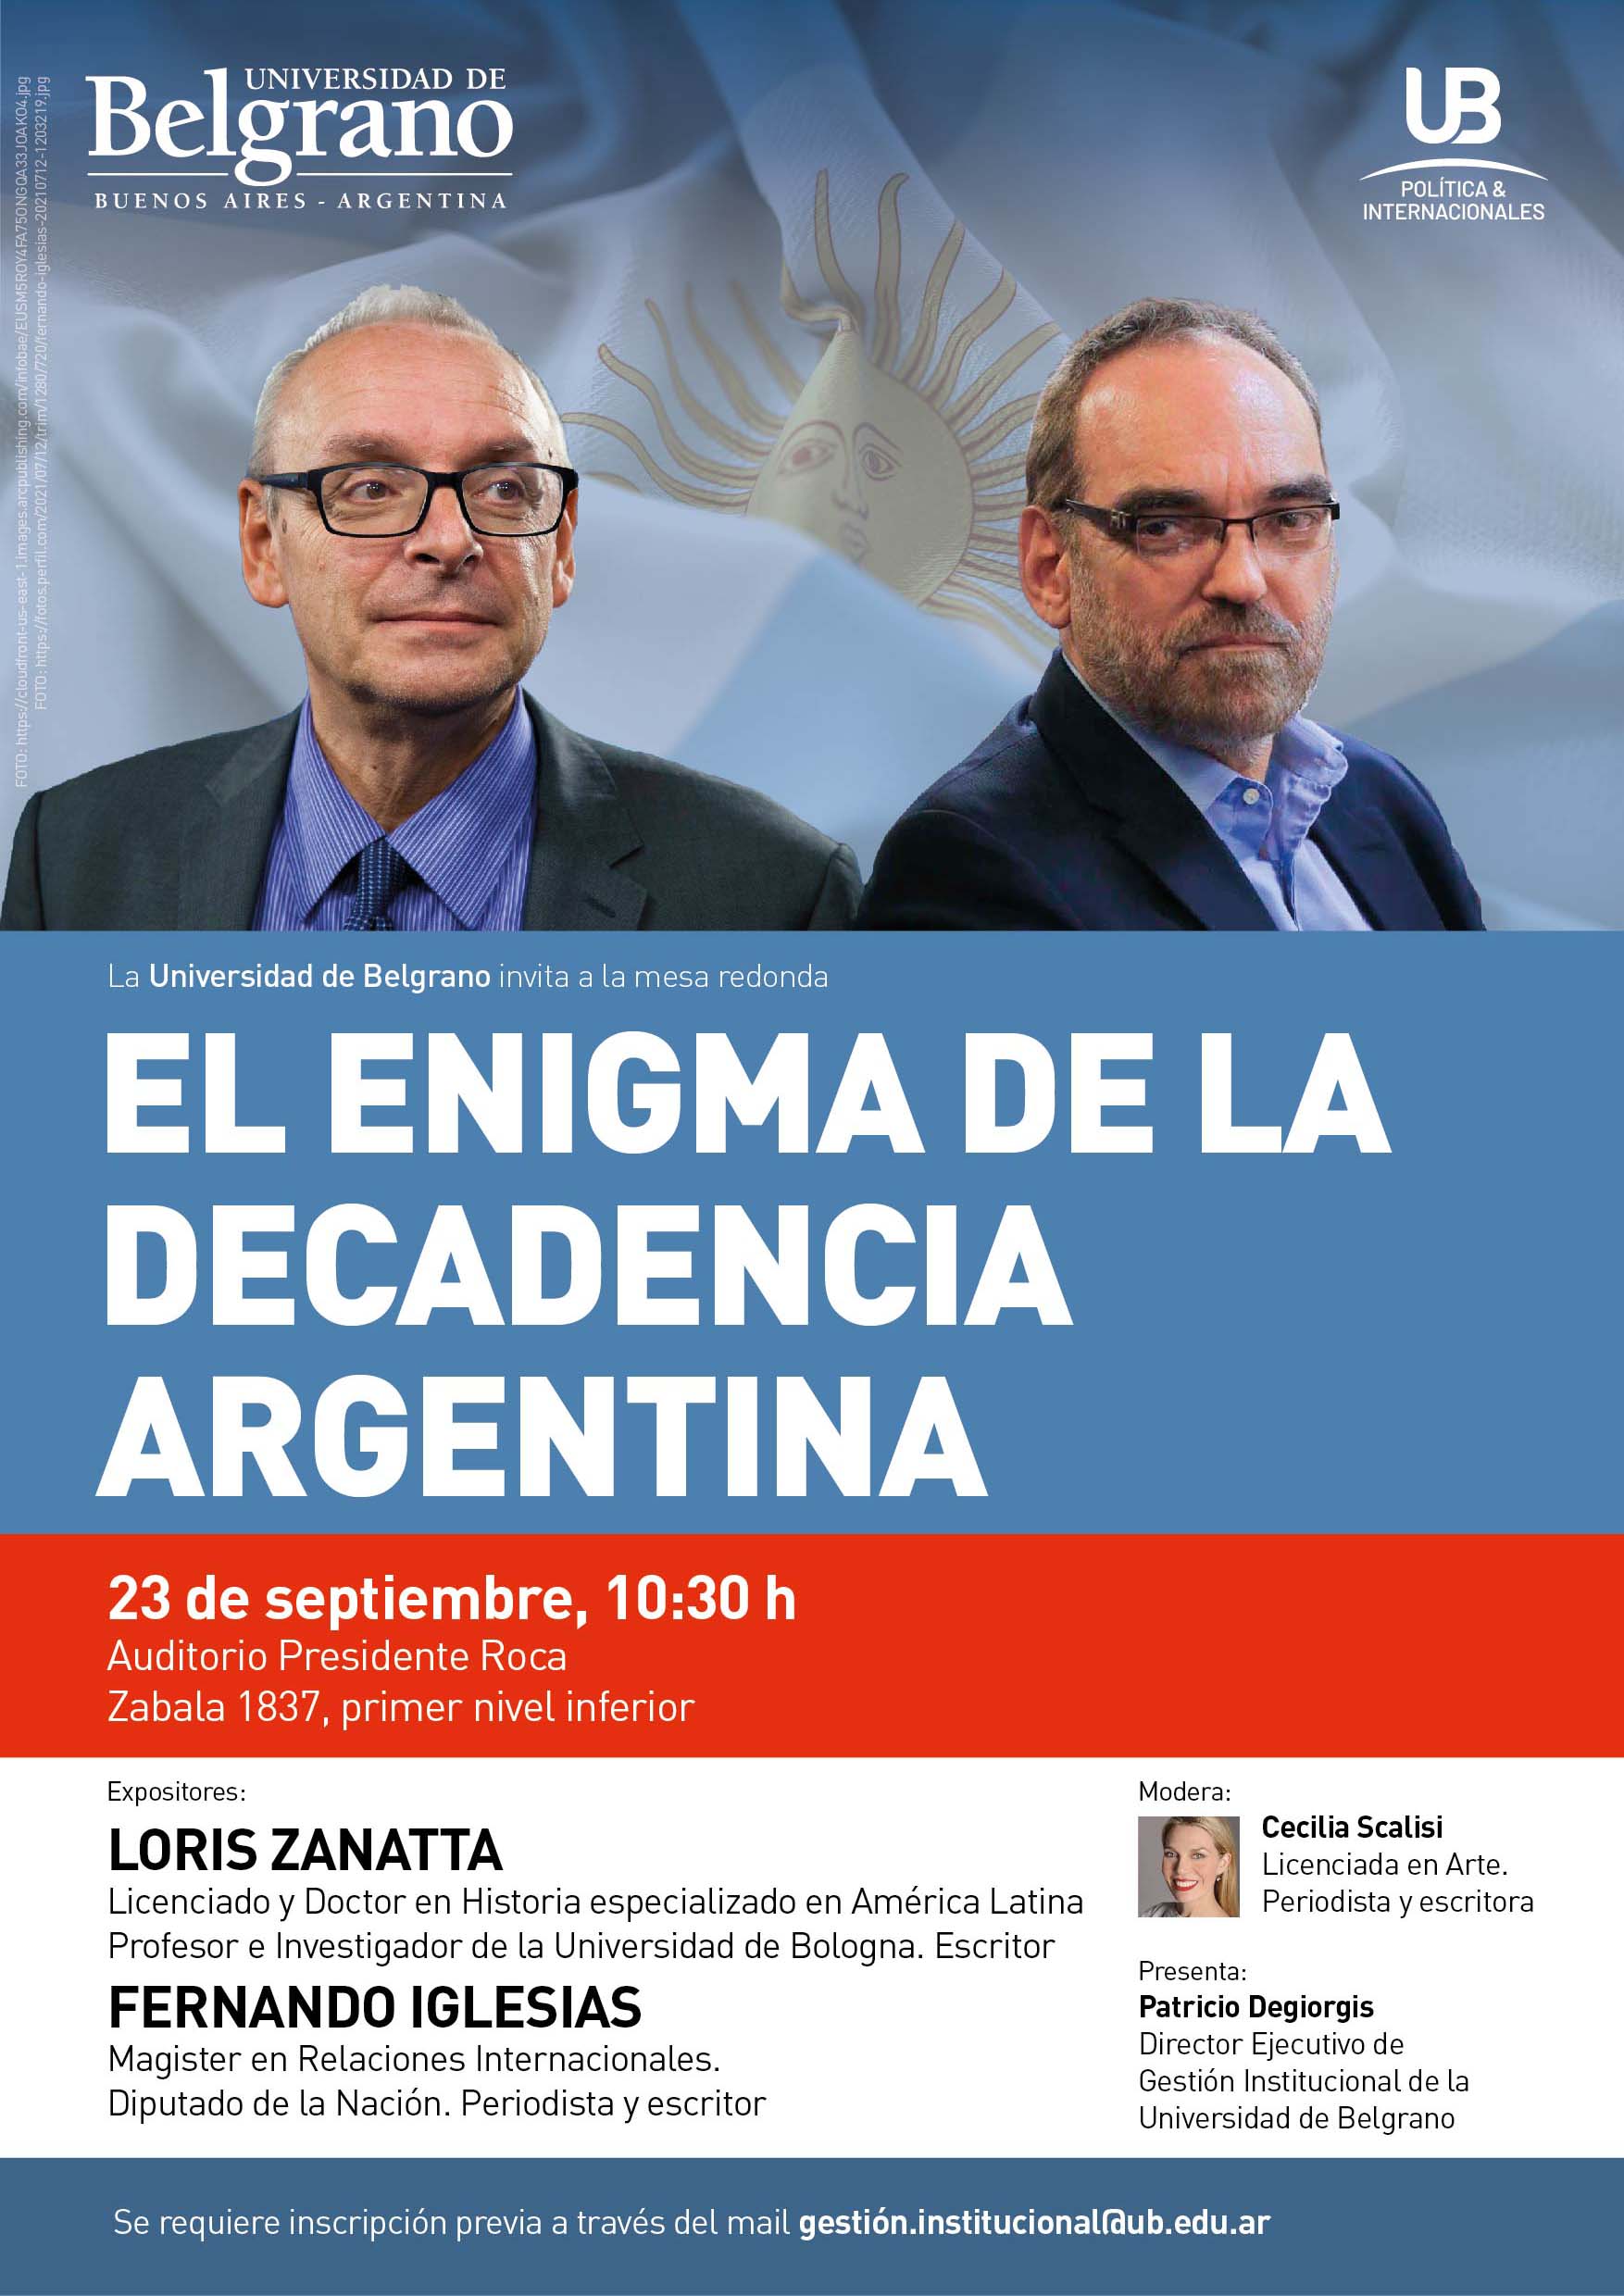 El enigma de la decadencia argentina